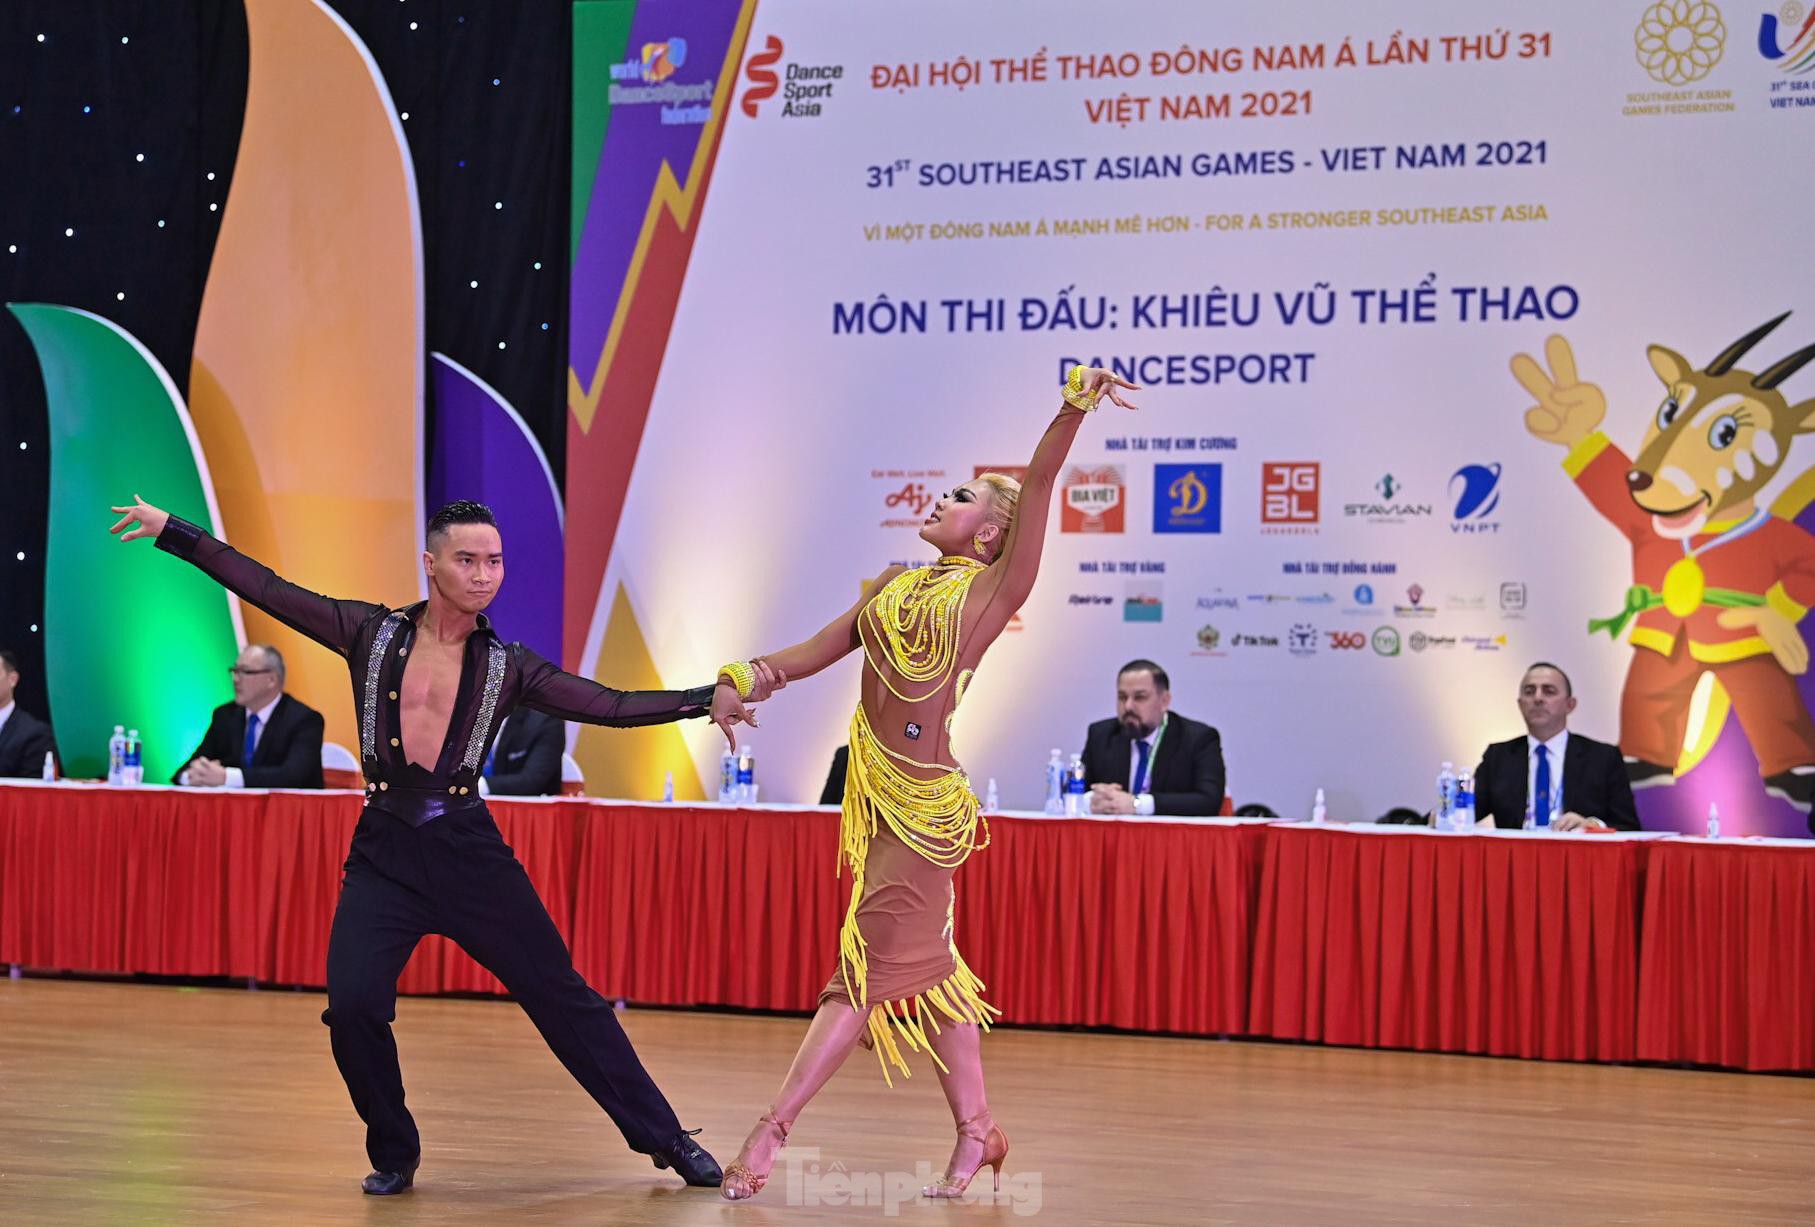 Ngắm vũ điệu mê hồn giúp Dancesport Việt Nam giành 5 HCV SEA Games 31 - Ảnh 1.